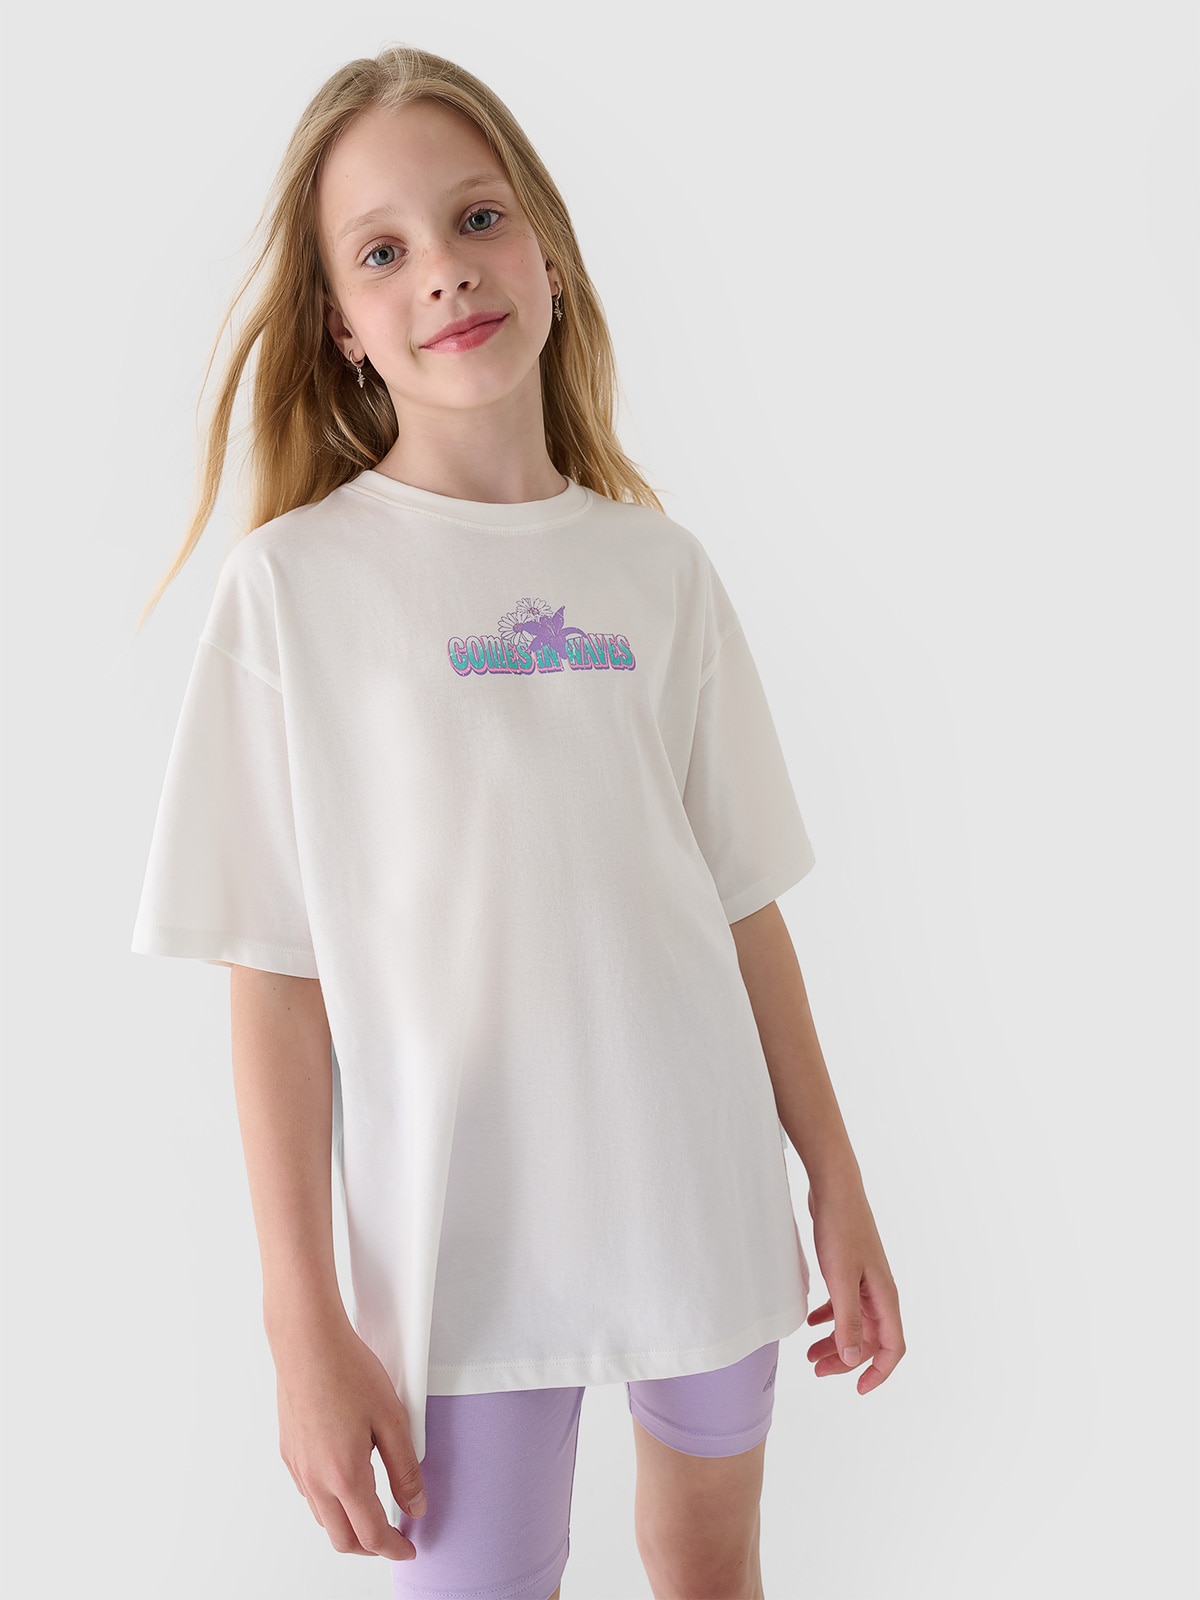 Dívčí tričko oversize s potiskem - lomené bílé